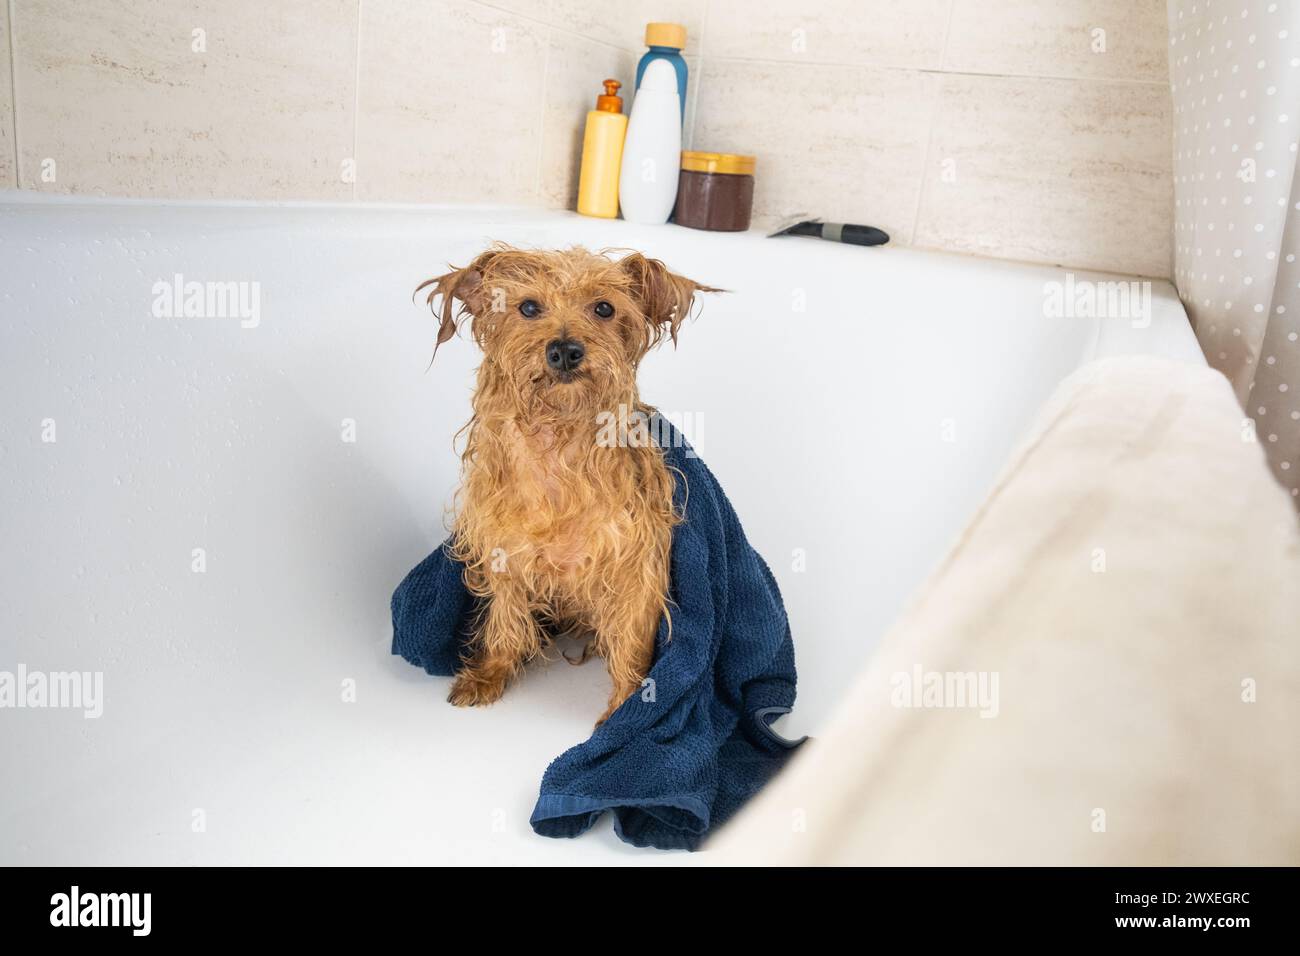 Ein kleiner brauner Mischlingshund wartet nach dem Bad mit einem blauen Handtuch auf seinen Besitzer. Der kleine Hund ist nass. Haustiere zu Hause zu lieben und zu pflegen. Stockfoto